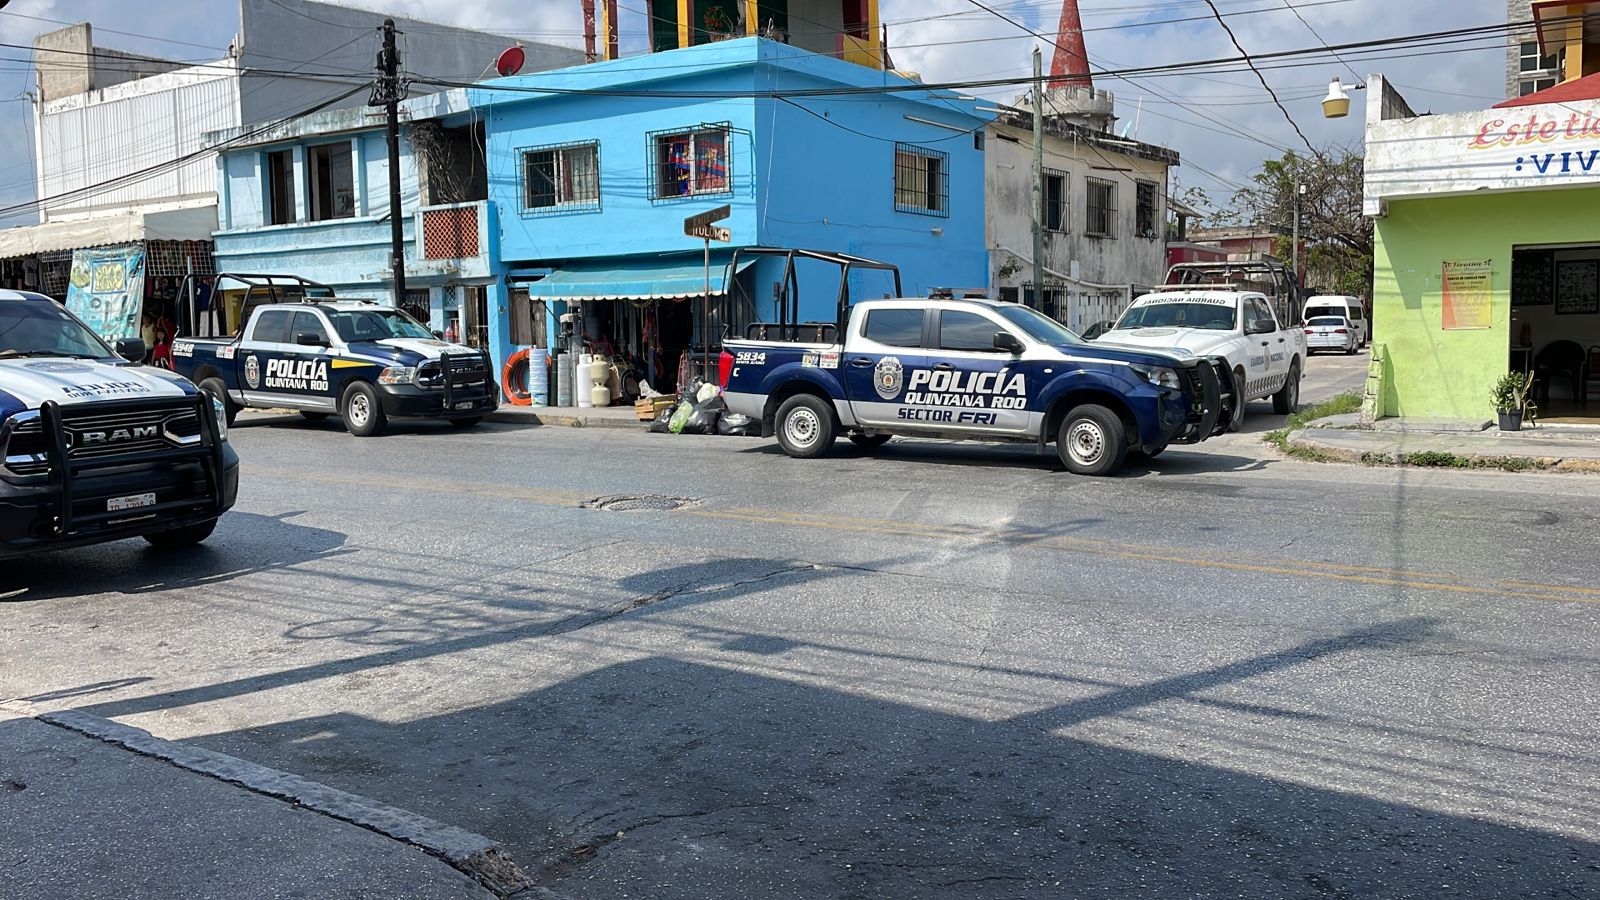 Casa de seguridad cateada en Cancún pertenece a cártel de "Los Pelones"